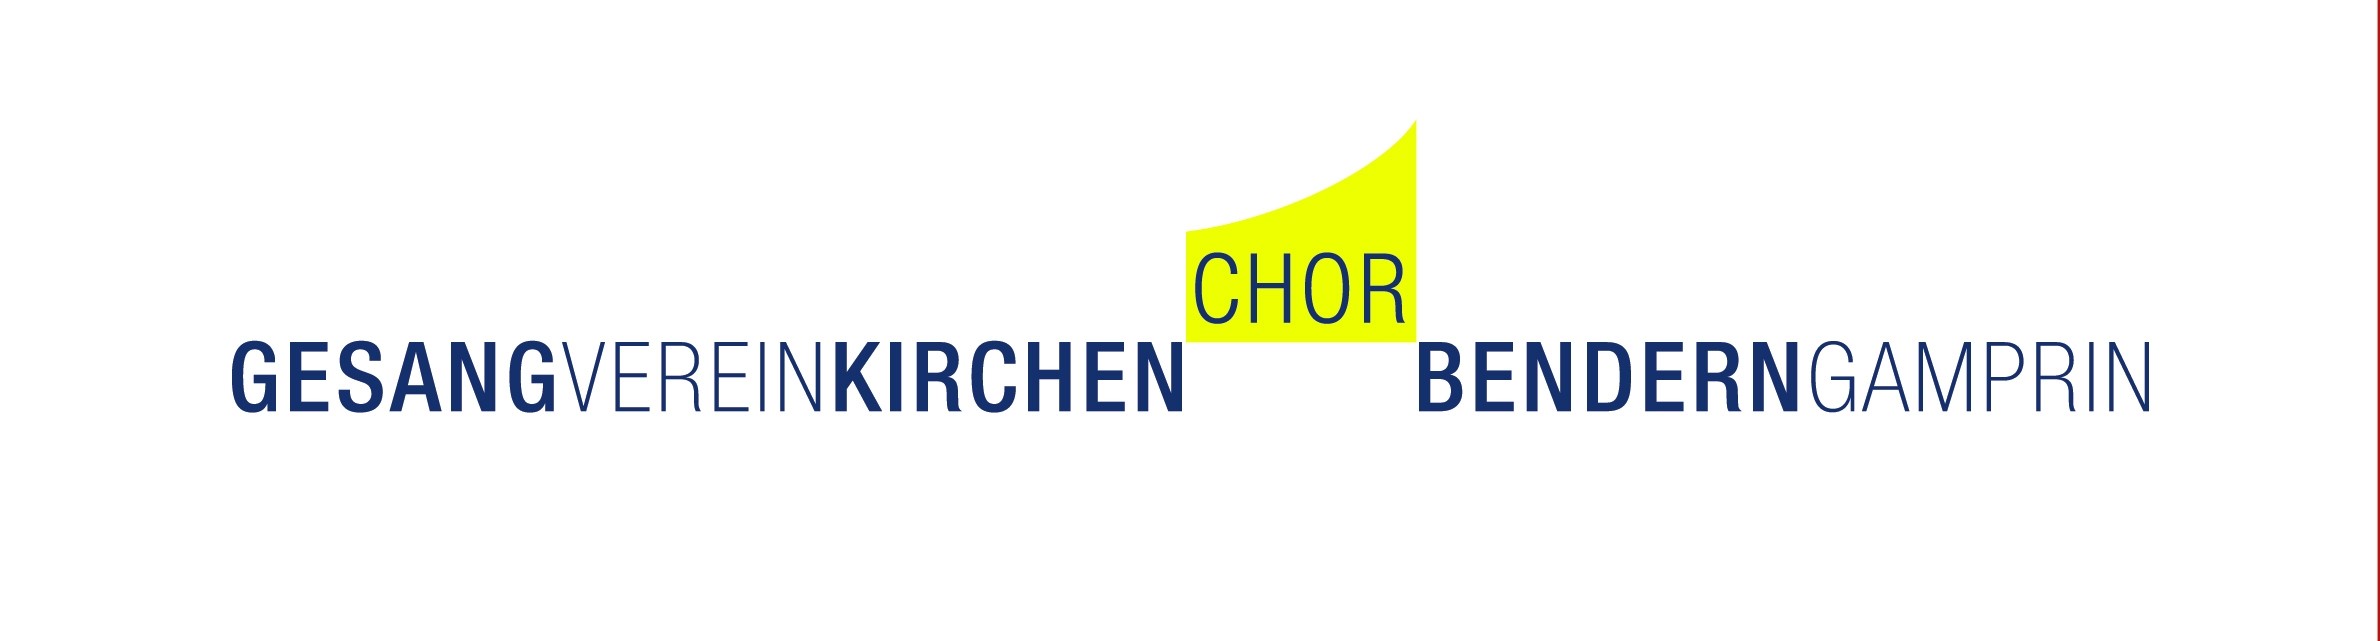 Gesangverein-Kirchenchor Bendern-Gamprin